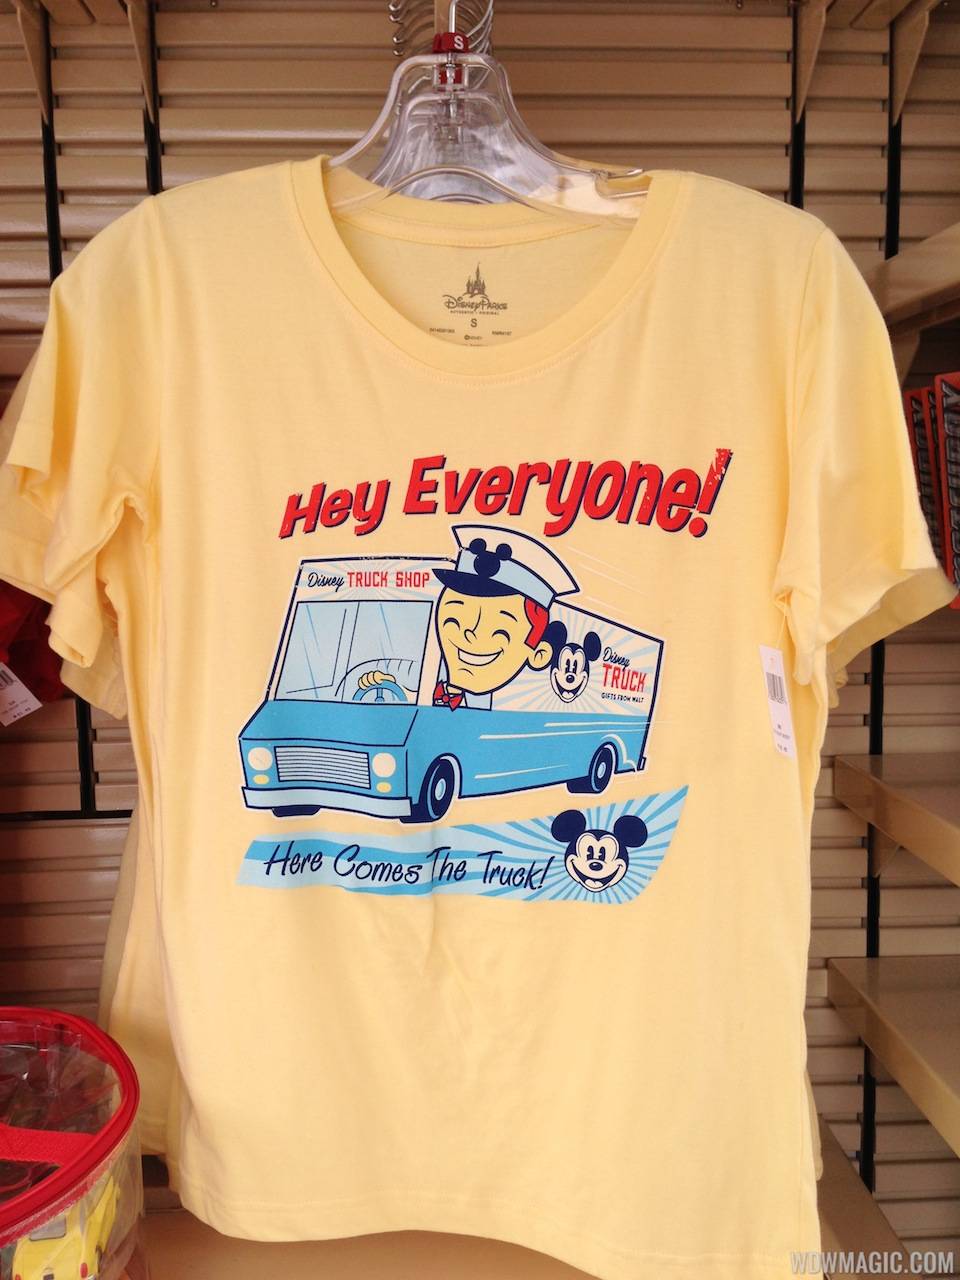 Disney Truck Shop T Shirt - $32.95